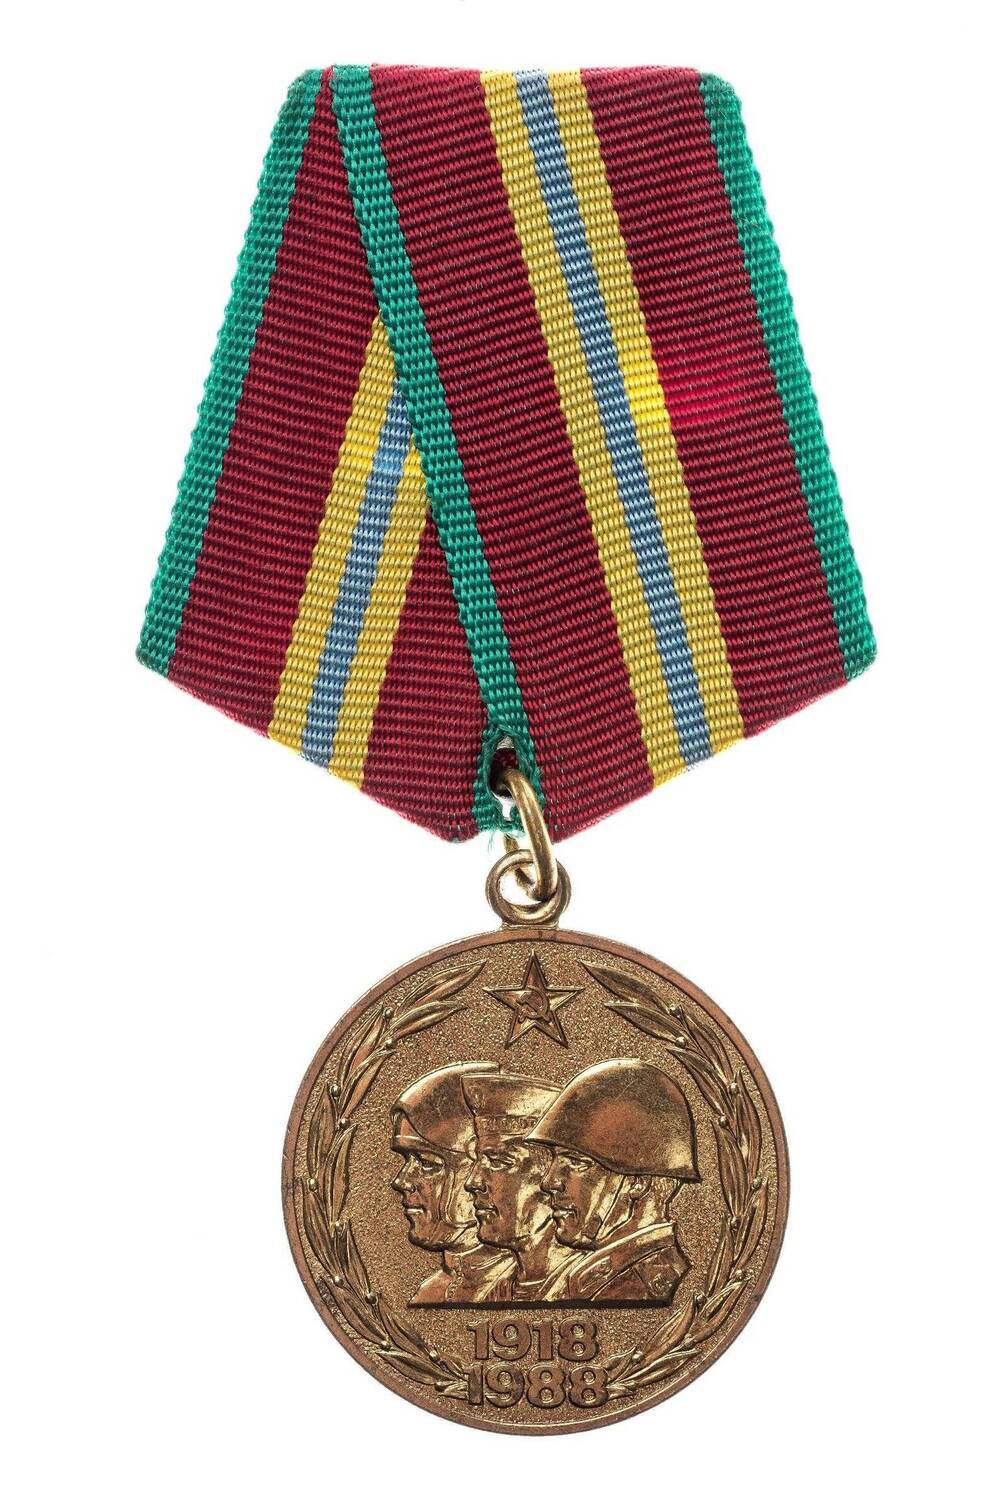 Юбилейная медаль 70 лет вооруженных сил СССР